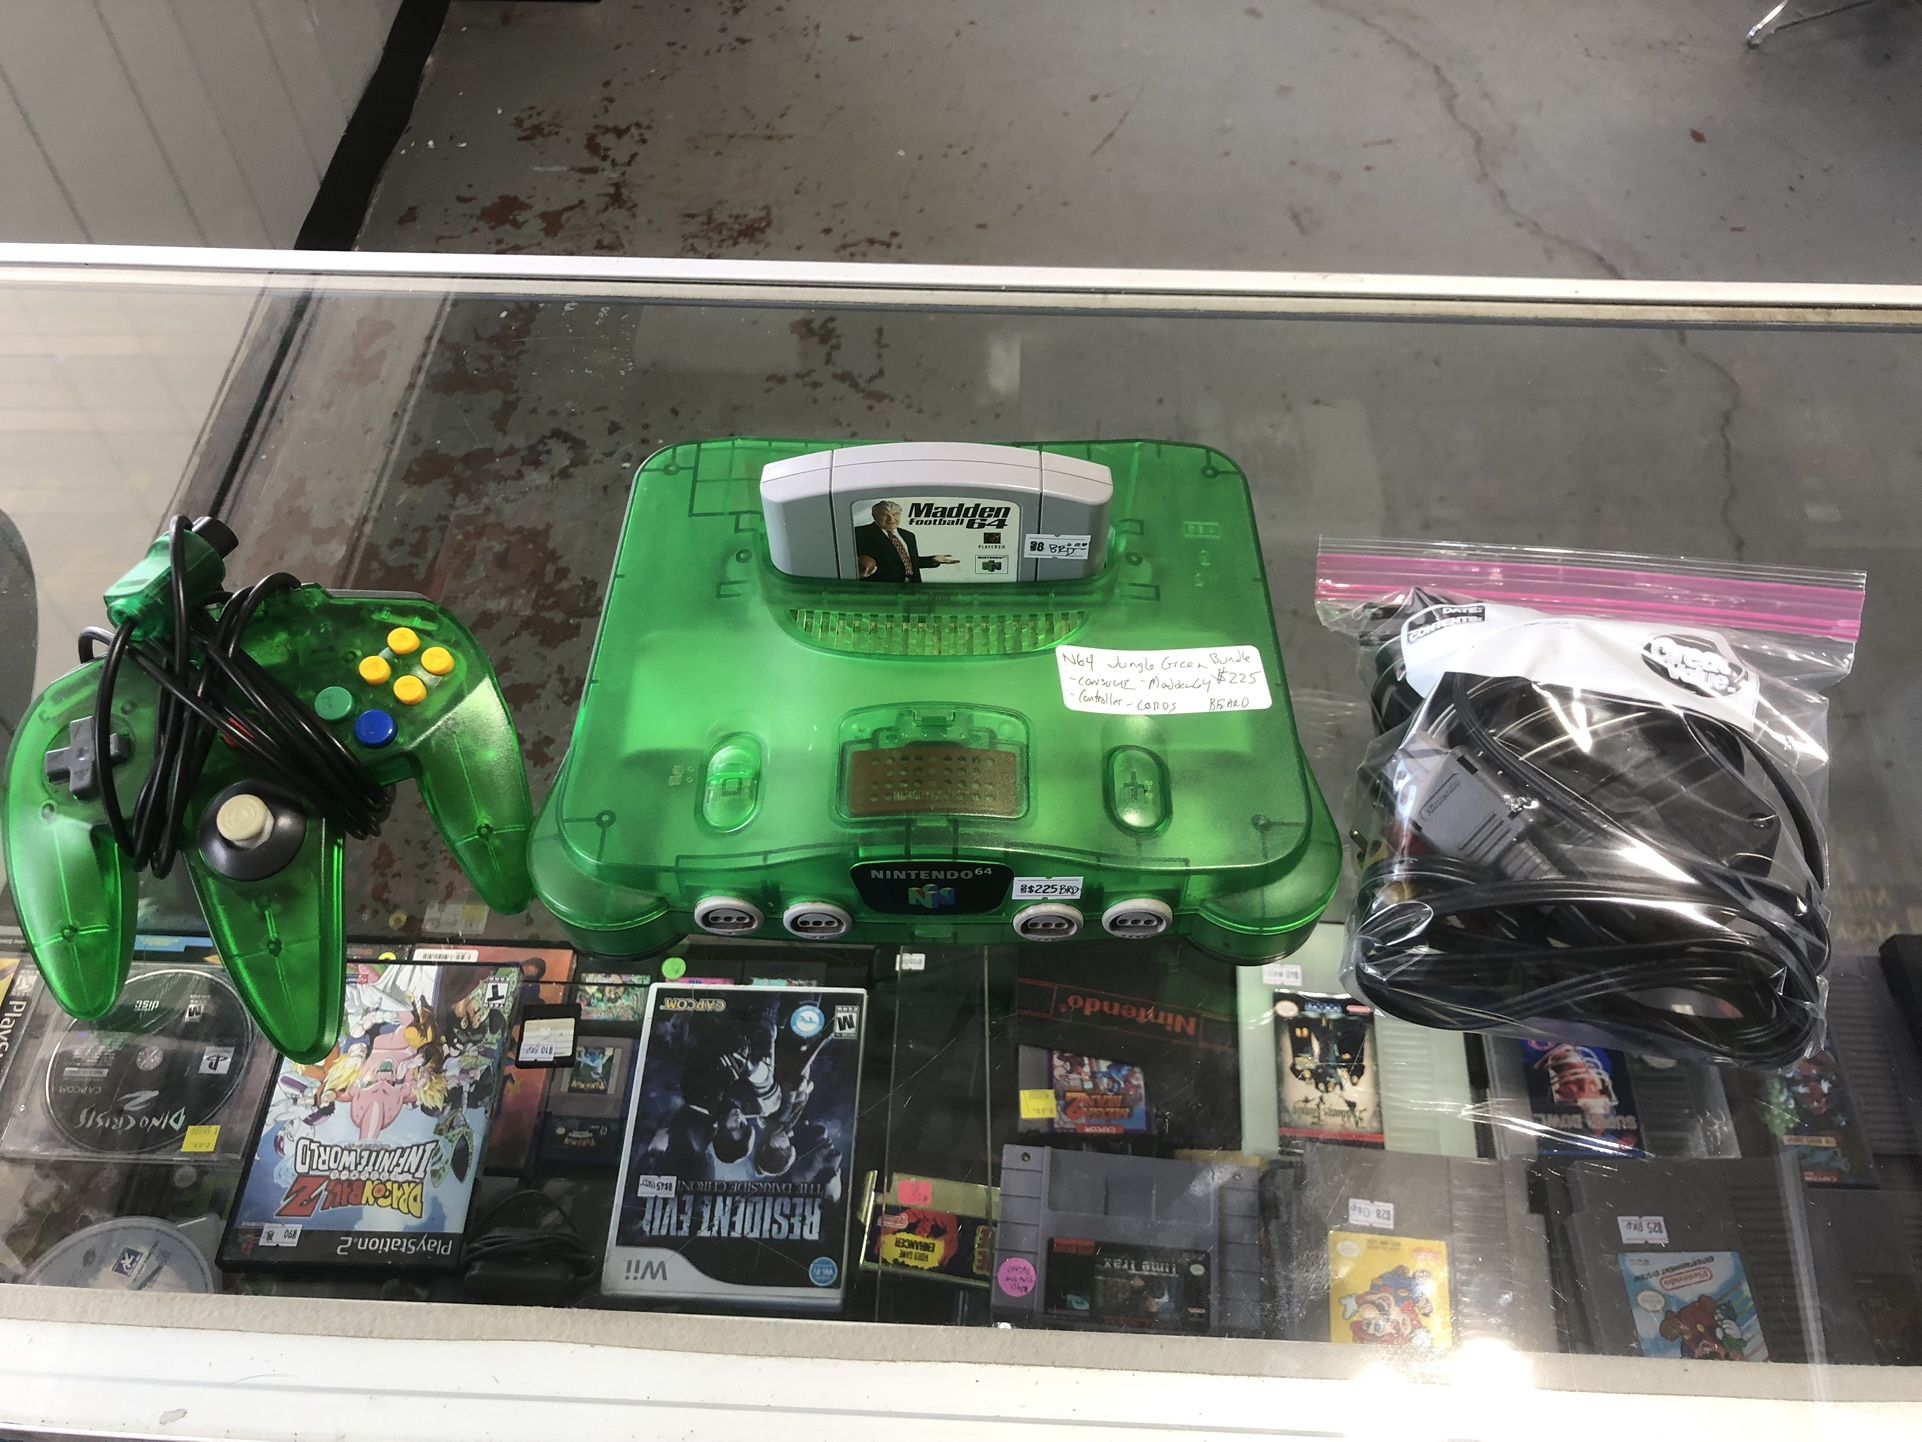 Jungle Green Nintendo 64 Console!!